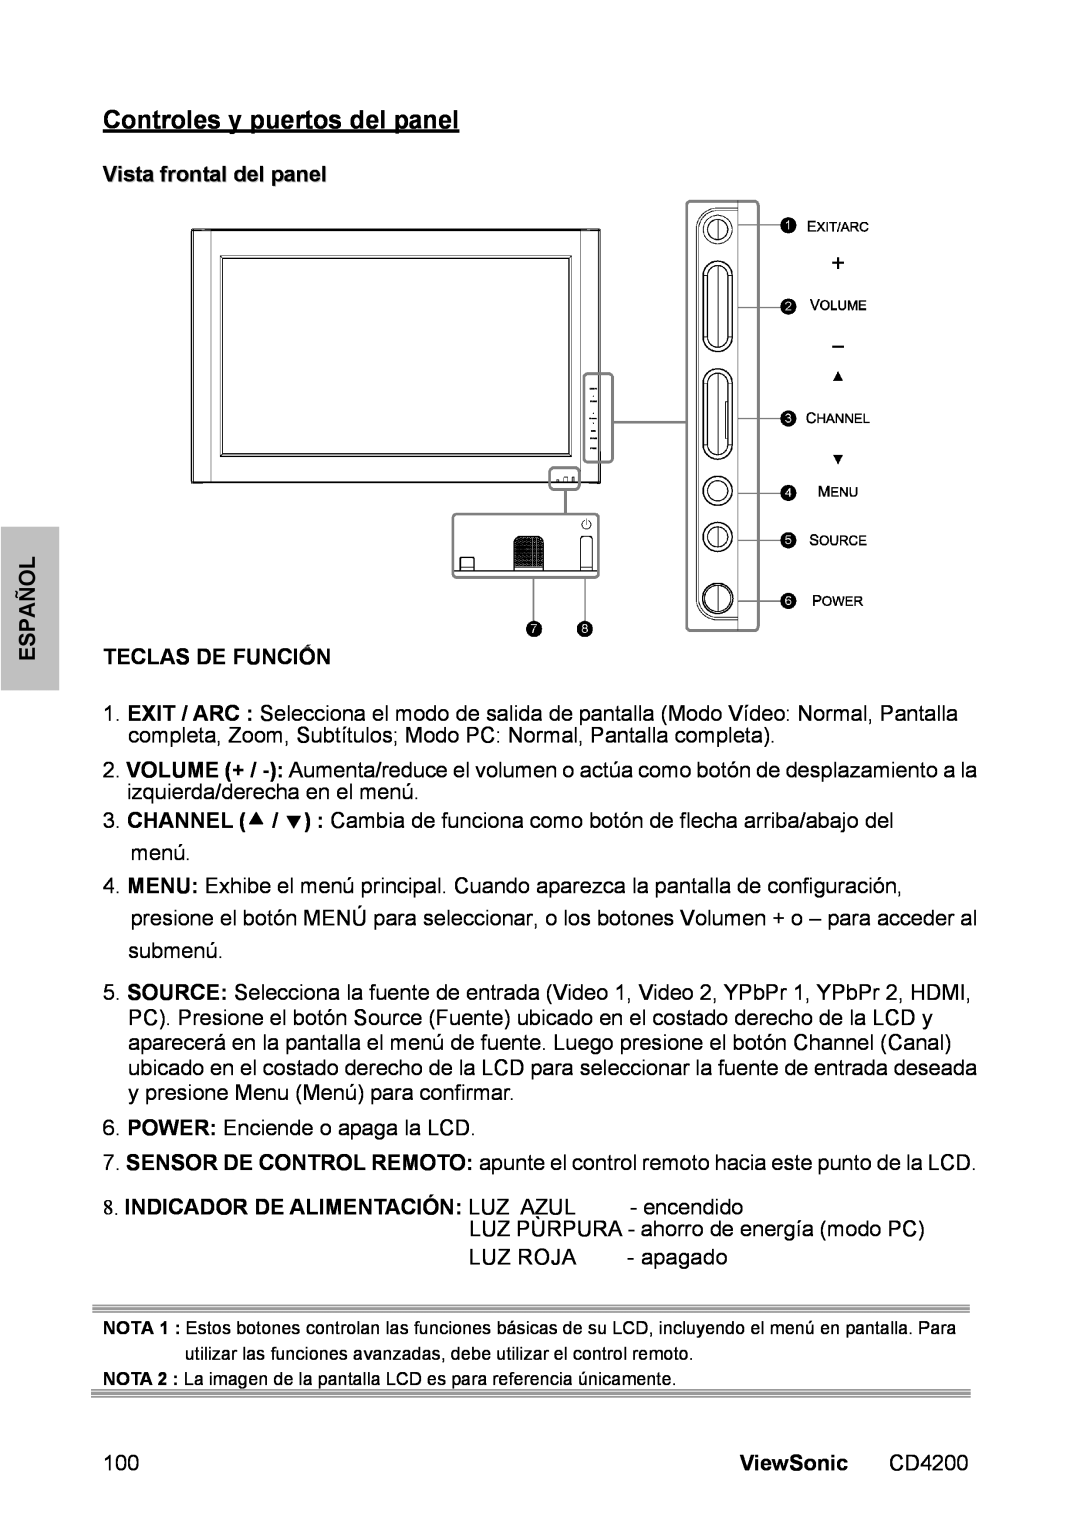 ViewSonic CD4200 manual Controles y puertos del panel, Vista frontal del panel TECLAS DE FUNCIỐN, Español, ViewSonic 